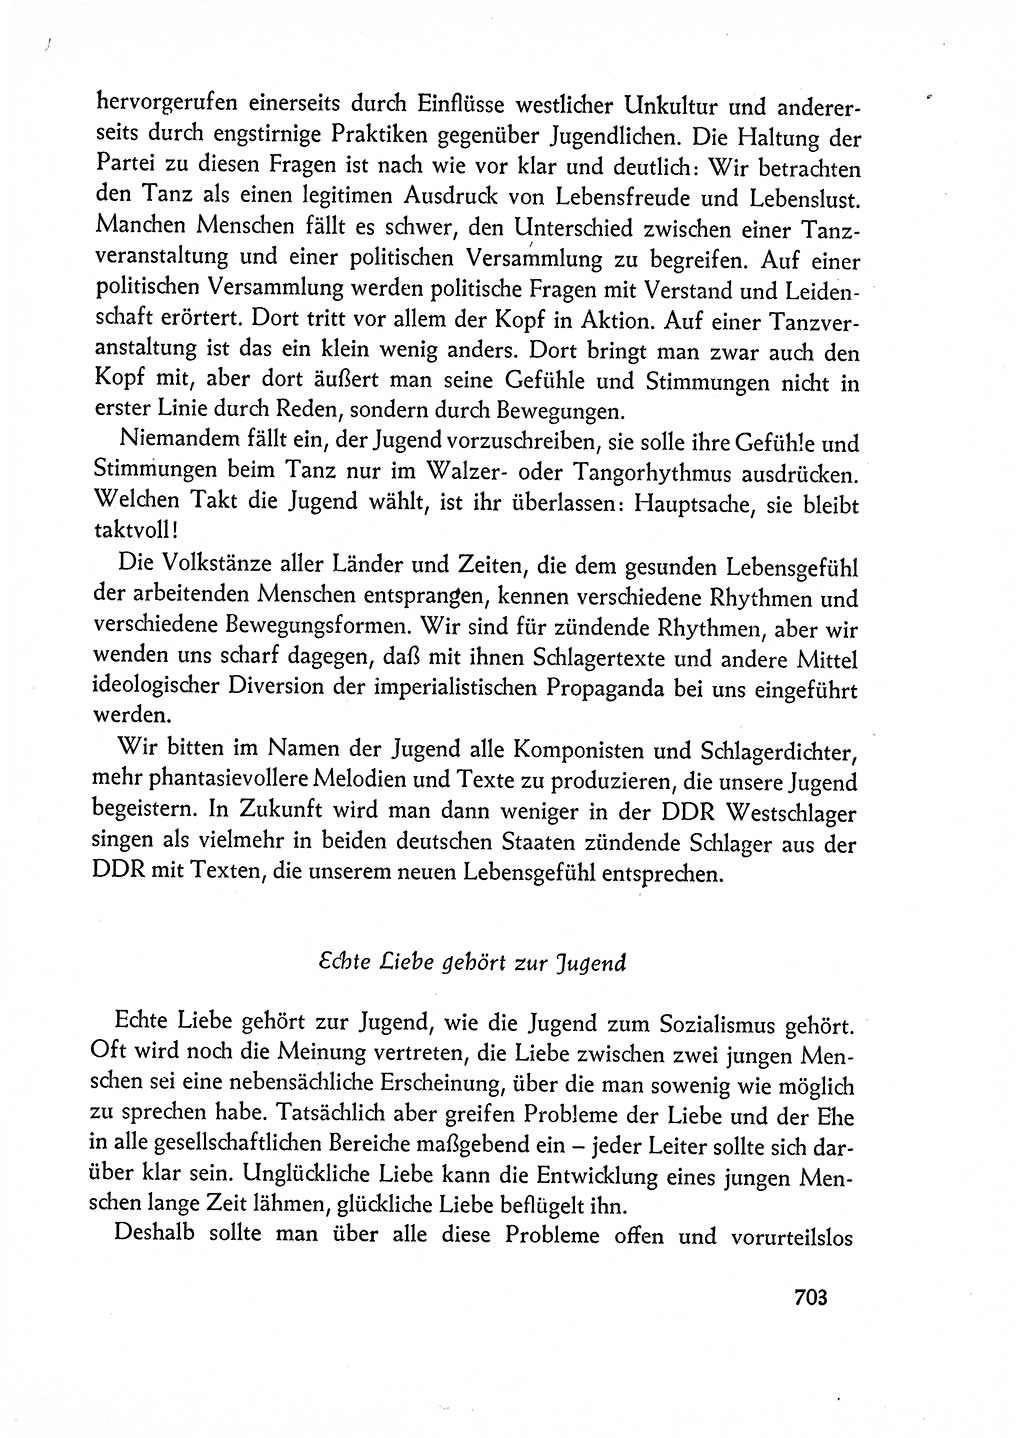 Dokumente der Sozialistischen Einheitspartei Deutschlands (SED) [Deutsche Demokratische Republik (DDR)] 1962-1963, Seite 703 (Dok. SED DDR 1962-1963, S. 703)